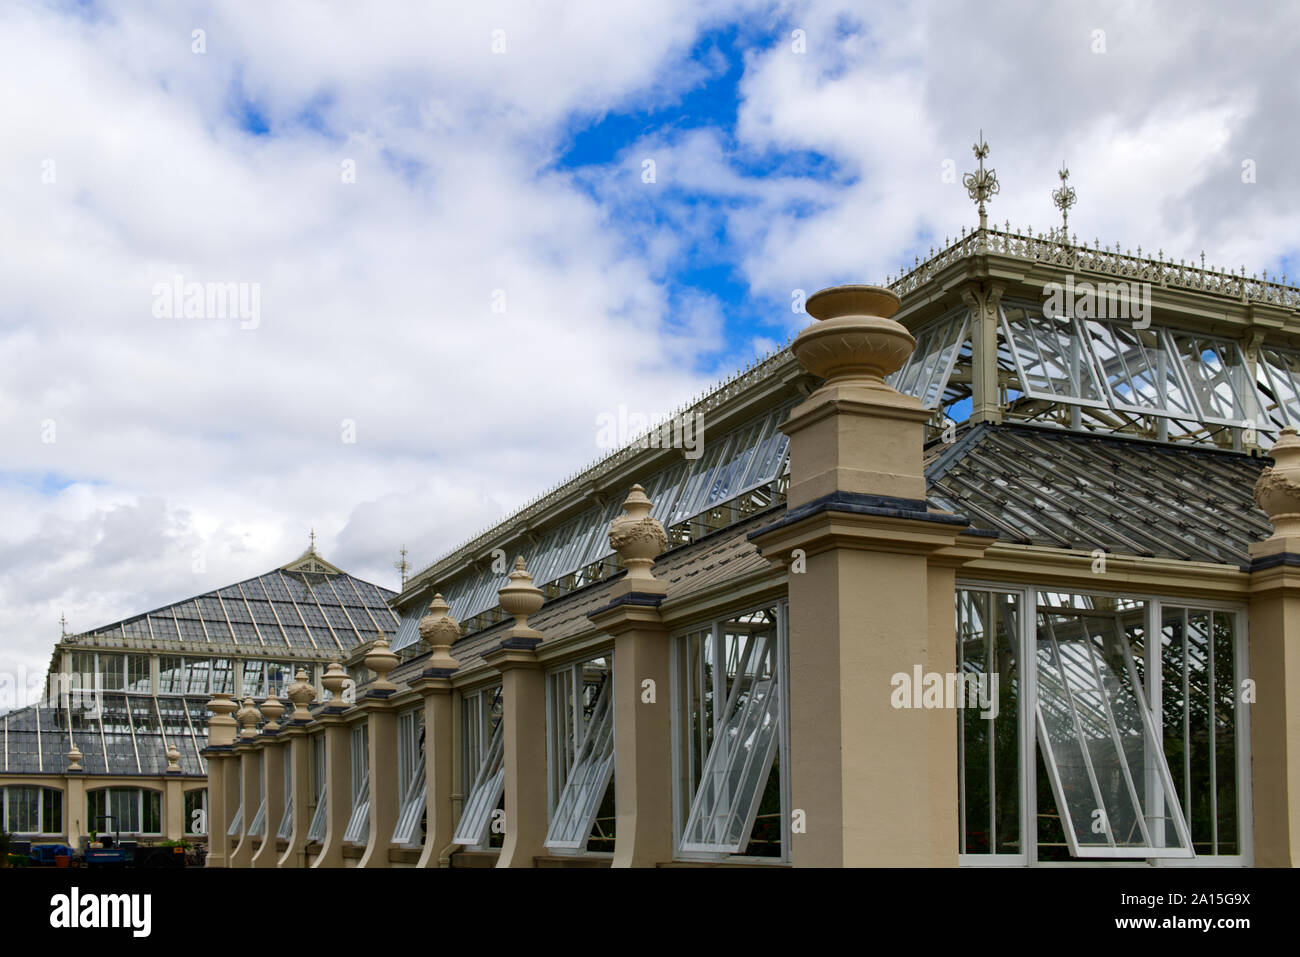 L'extérieur de l'Europe, maison, une serre victorienne à Kew Gardens, Richmond, London, England, UK Banque D'Images